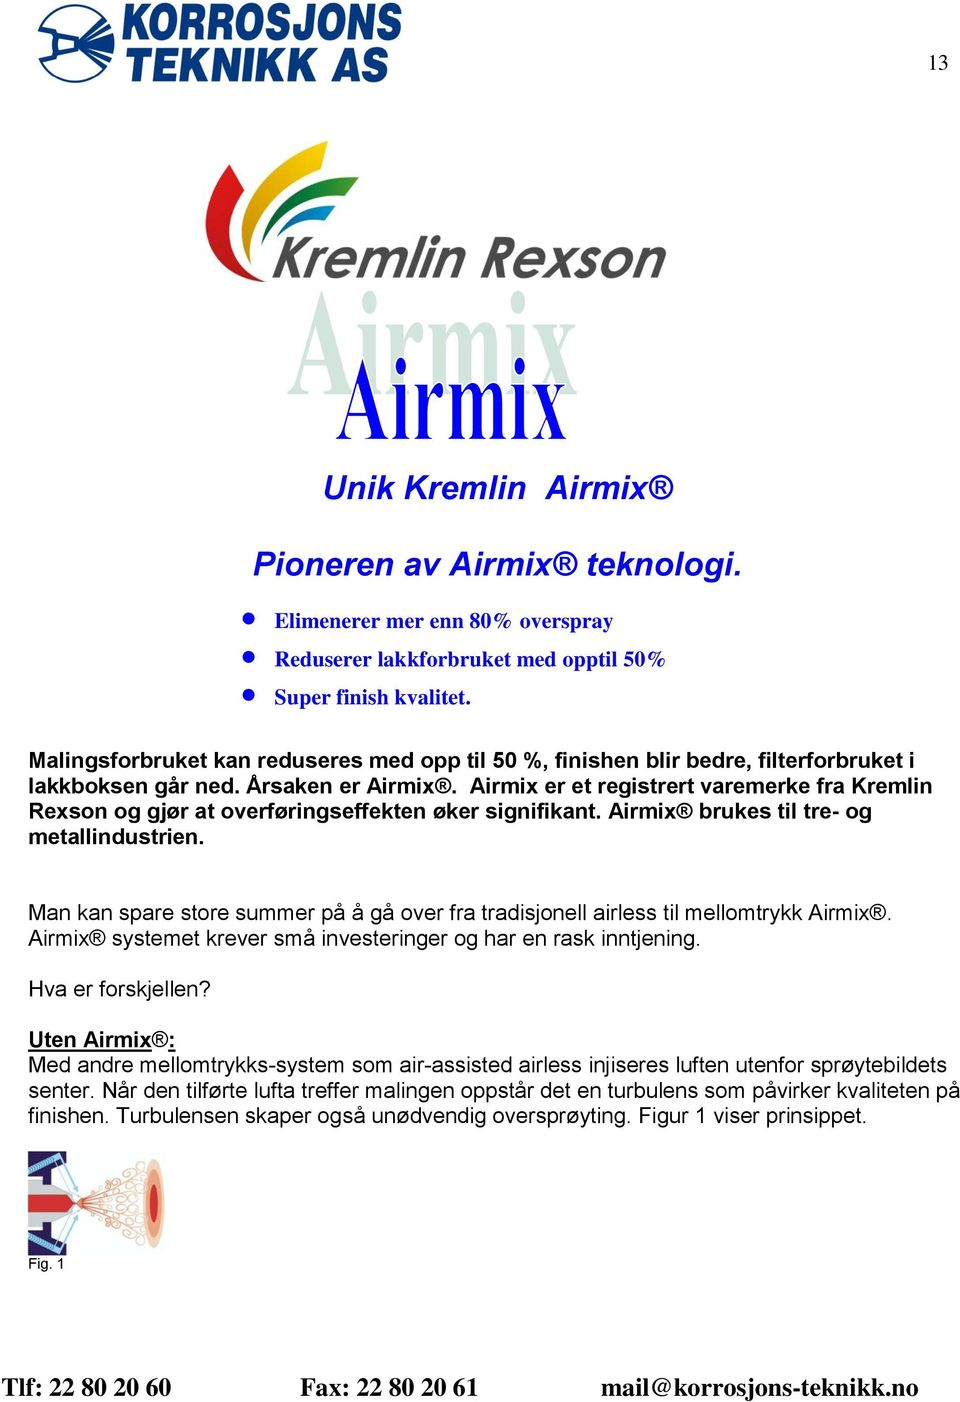 Airmix er et registrert varemerke fra Kremlin Rexson og gjør at overføringseffekten øker signifikant. Airmix brukes til tre- og metallindustrien.